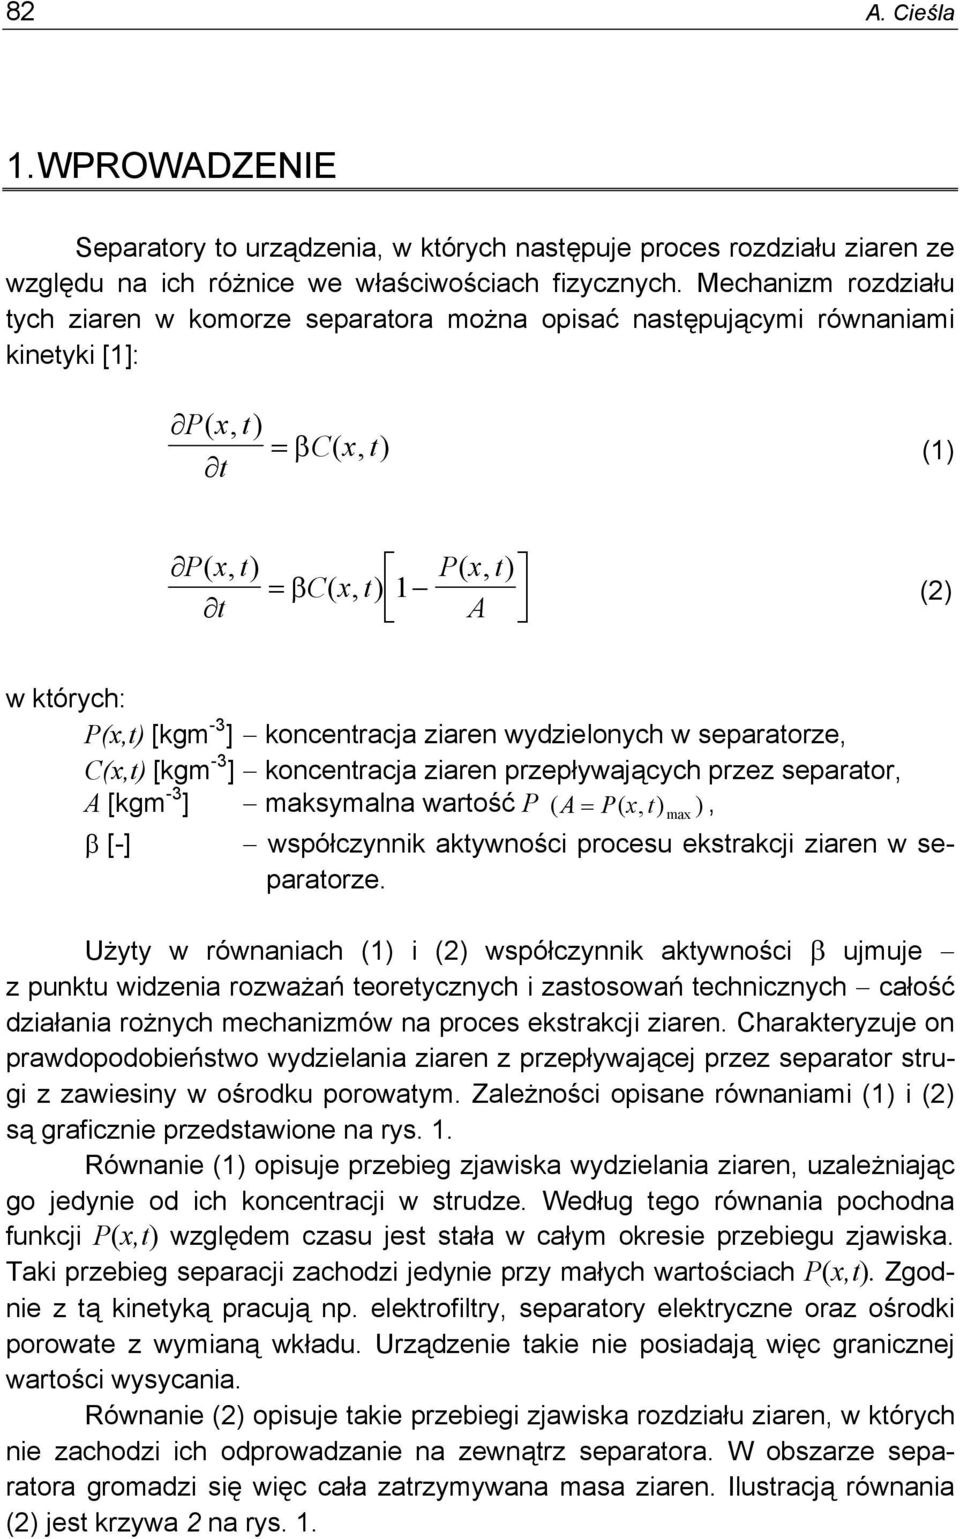 ziaen wydzielonych w sepaatoze, C(x,t) [kgm -3 ] koncentacja ziaen pzepływających pzez sepaato, A [kgm -3 ] maksymalna watość P ( A= P( x, t) ), β [-] współczynnik aktywności pocesu ekstakcji ziaen w